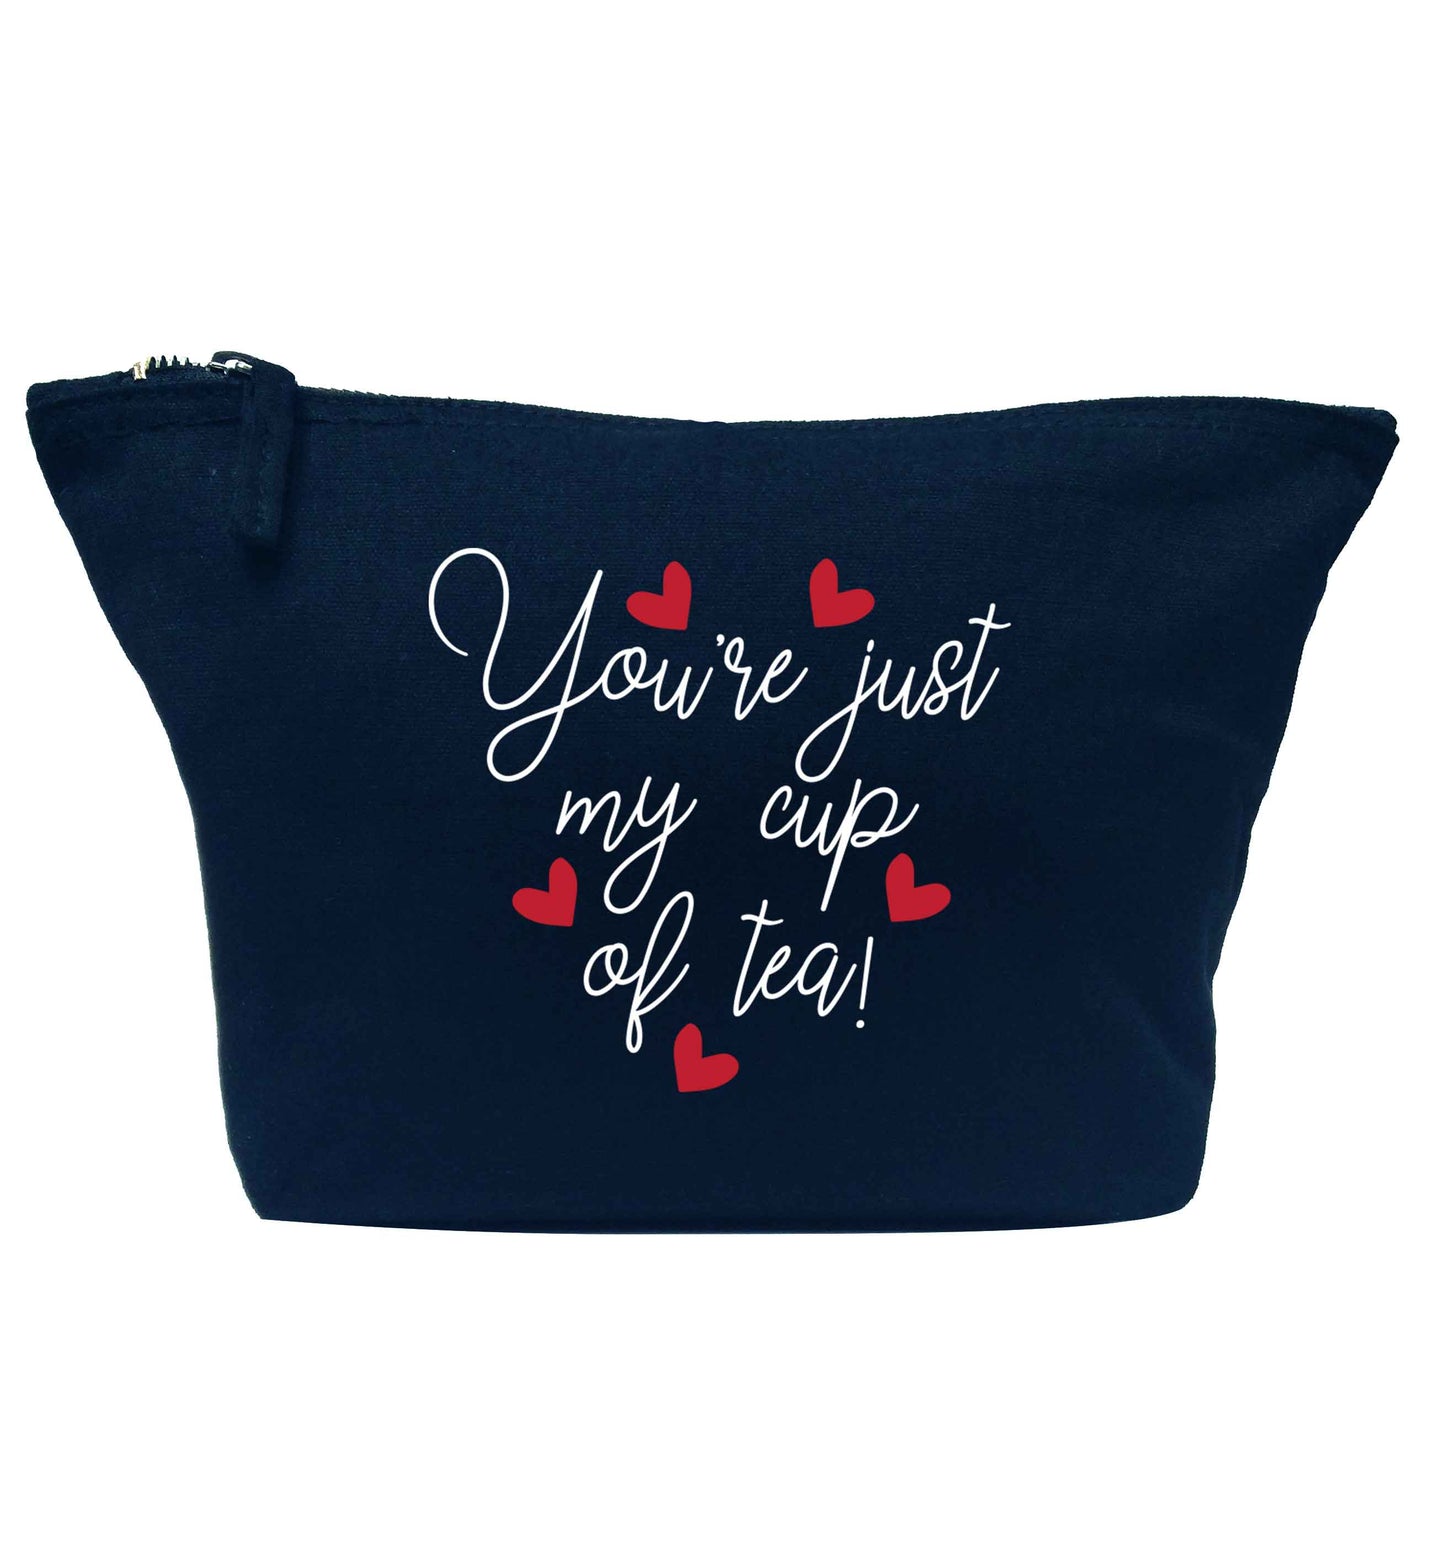 You're just my cup of tea navy makeup bag